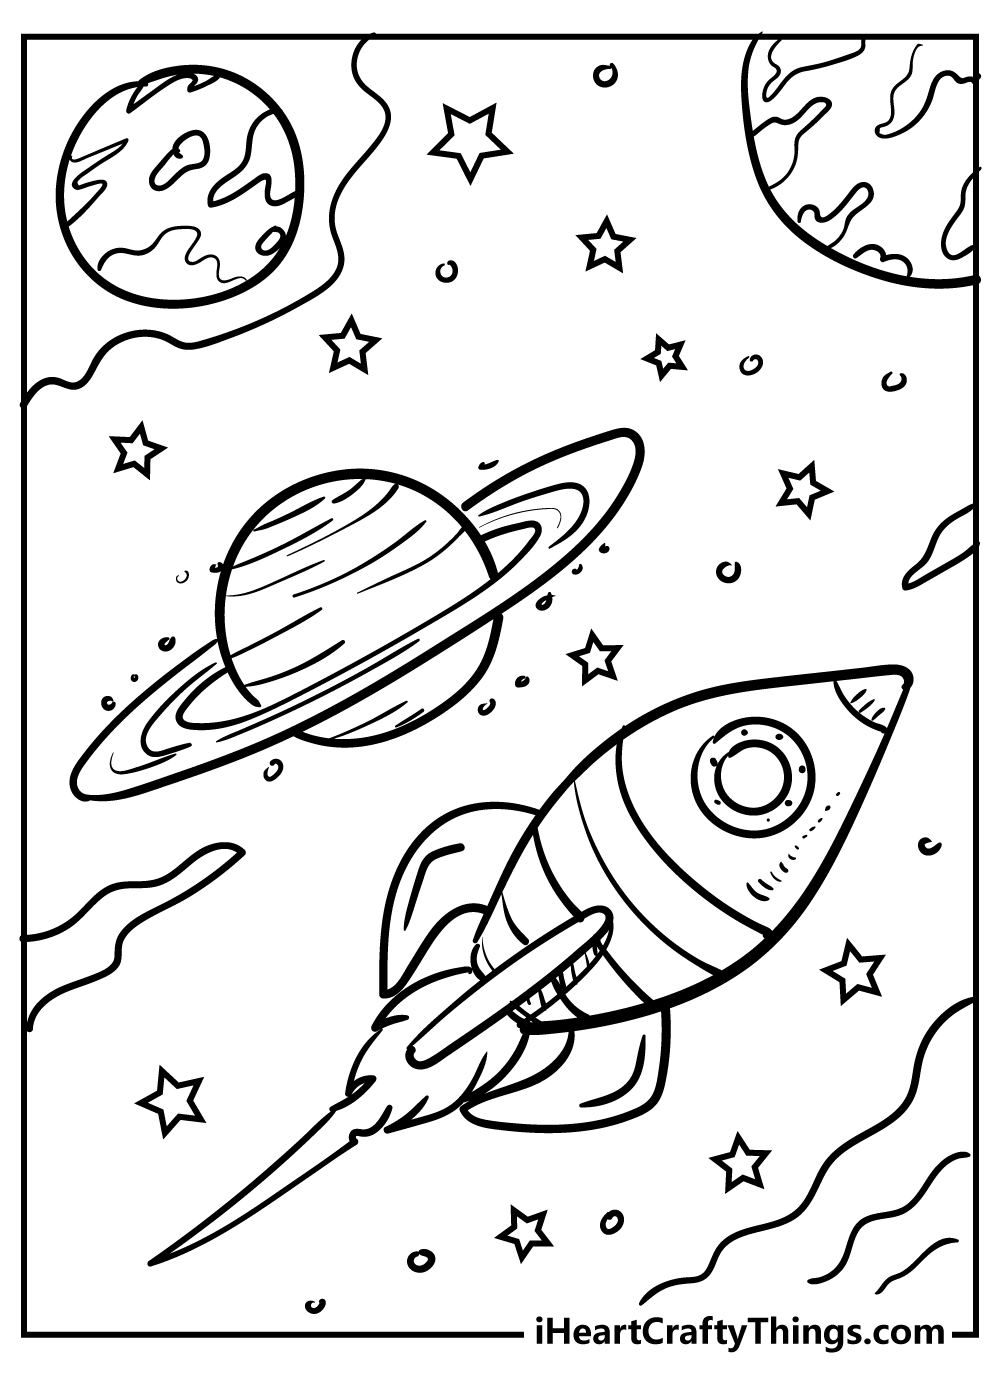 Рисунок на тему космос раскраска. Космос раскраска для детей. Раскраска. В космосе. Раскраска космос и планеты для детей. Космические раскраски для детей.